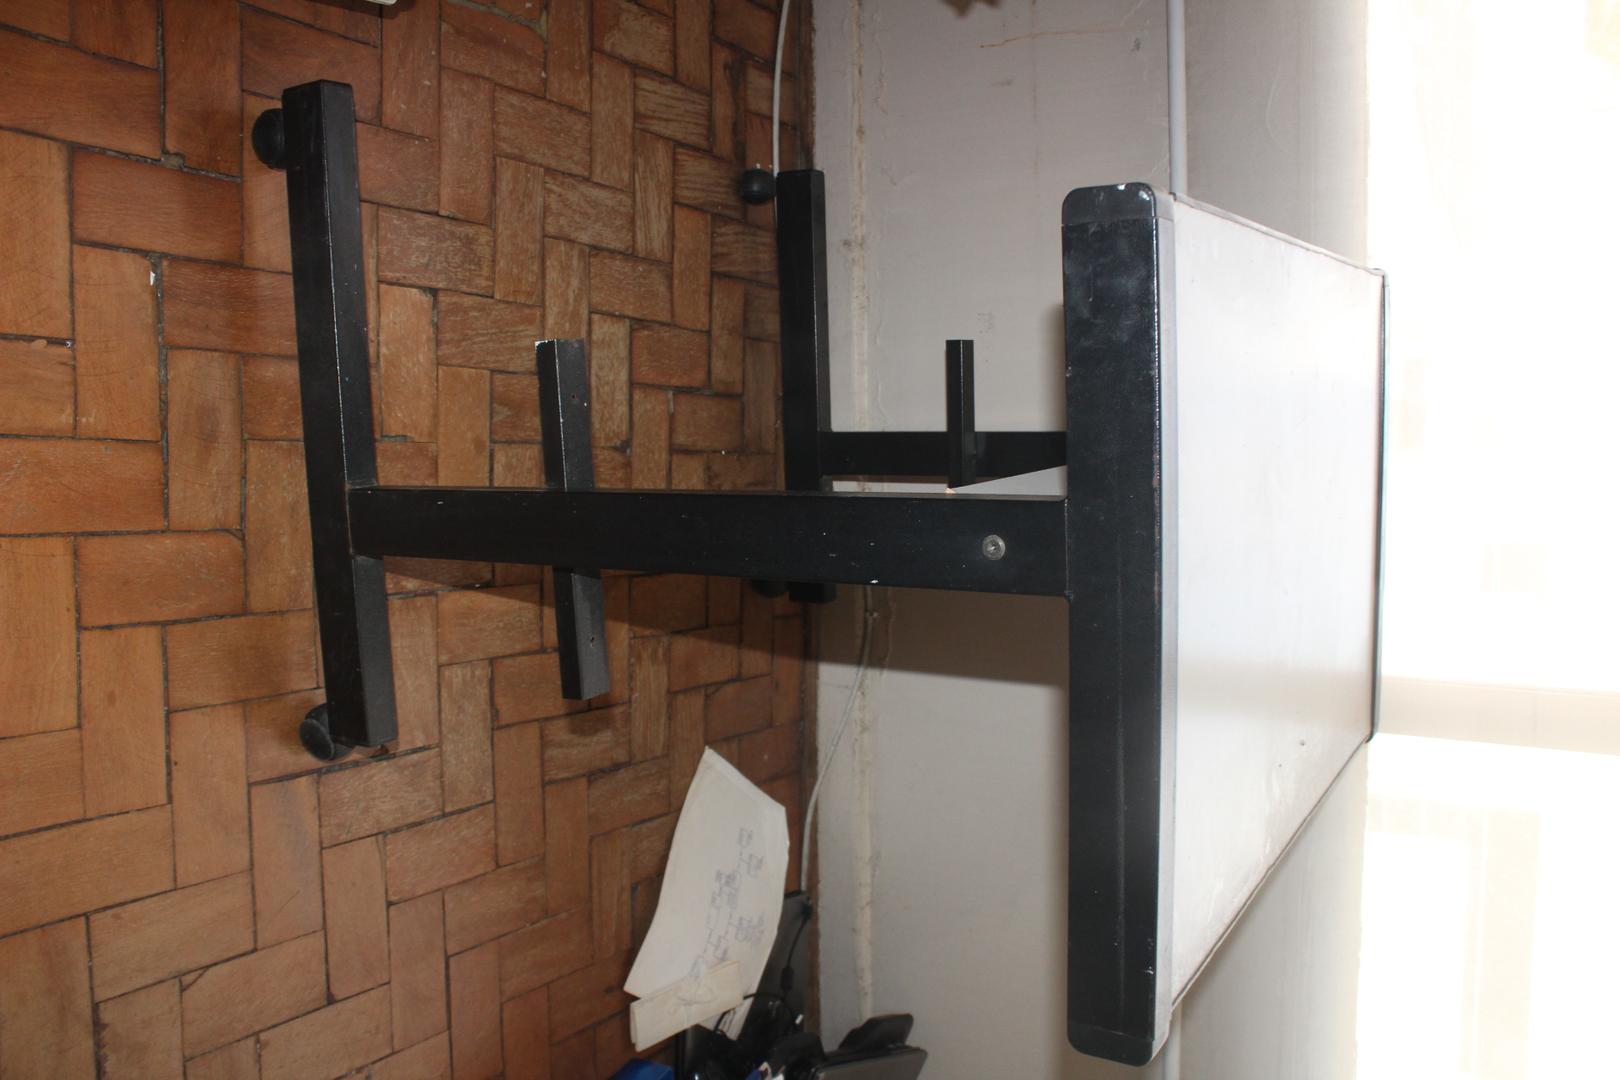 Mesa de Apoio em MDF / Aço Bege 72 cm x 76 cm x 46 cm